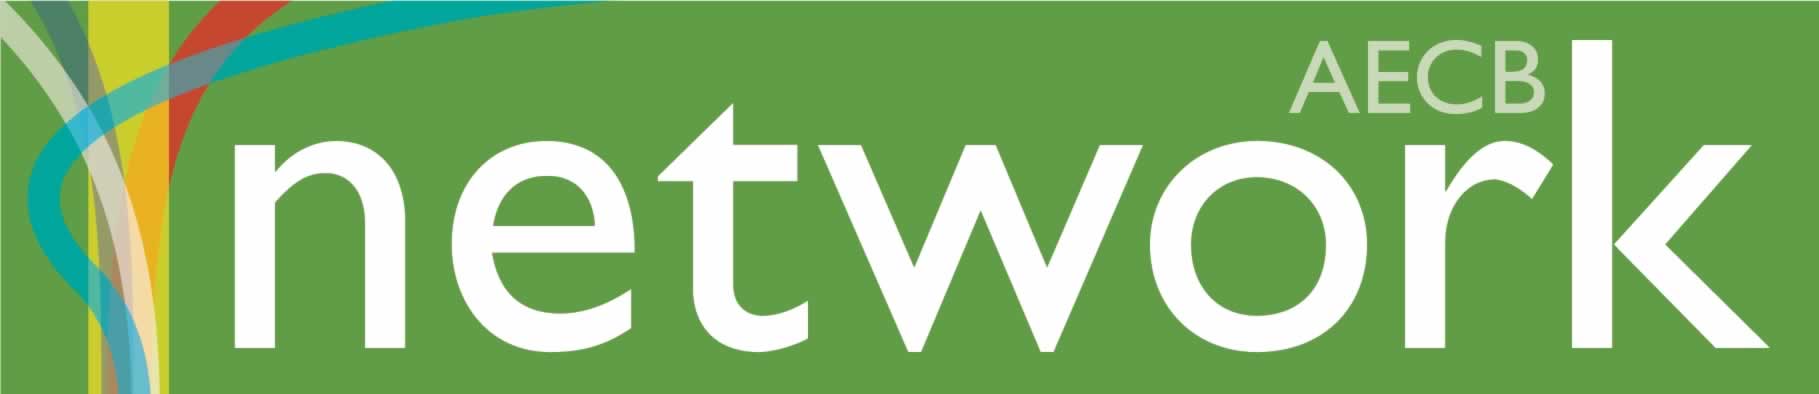 Network newsletter logo